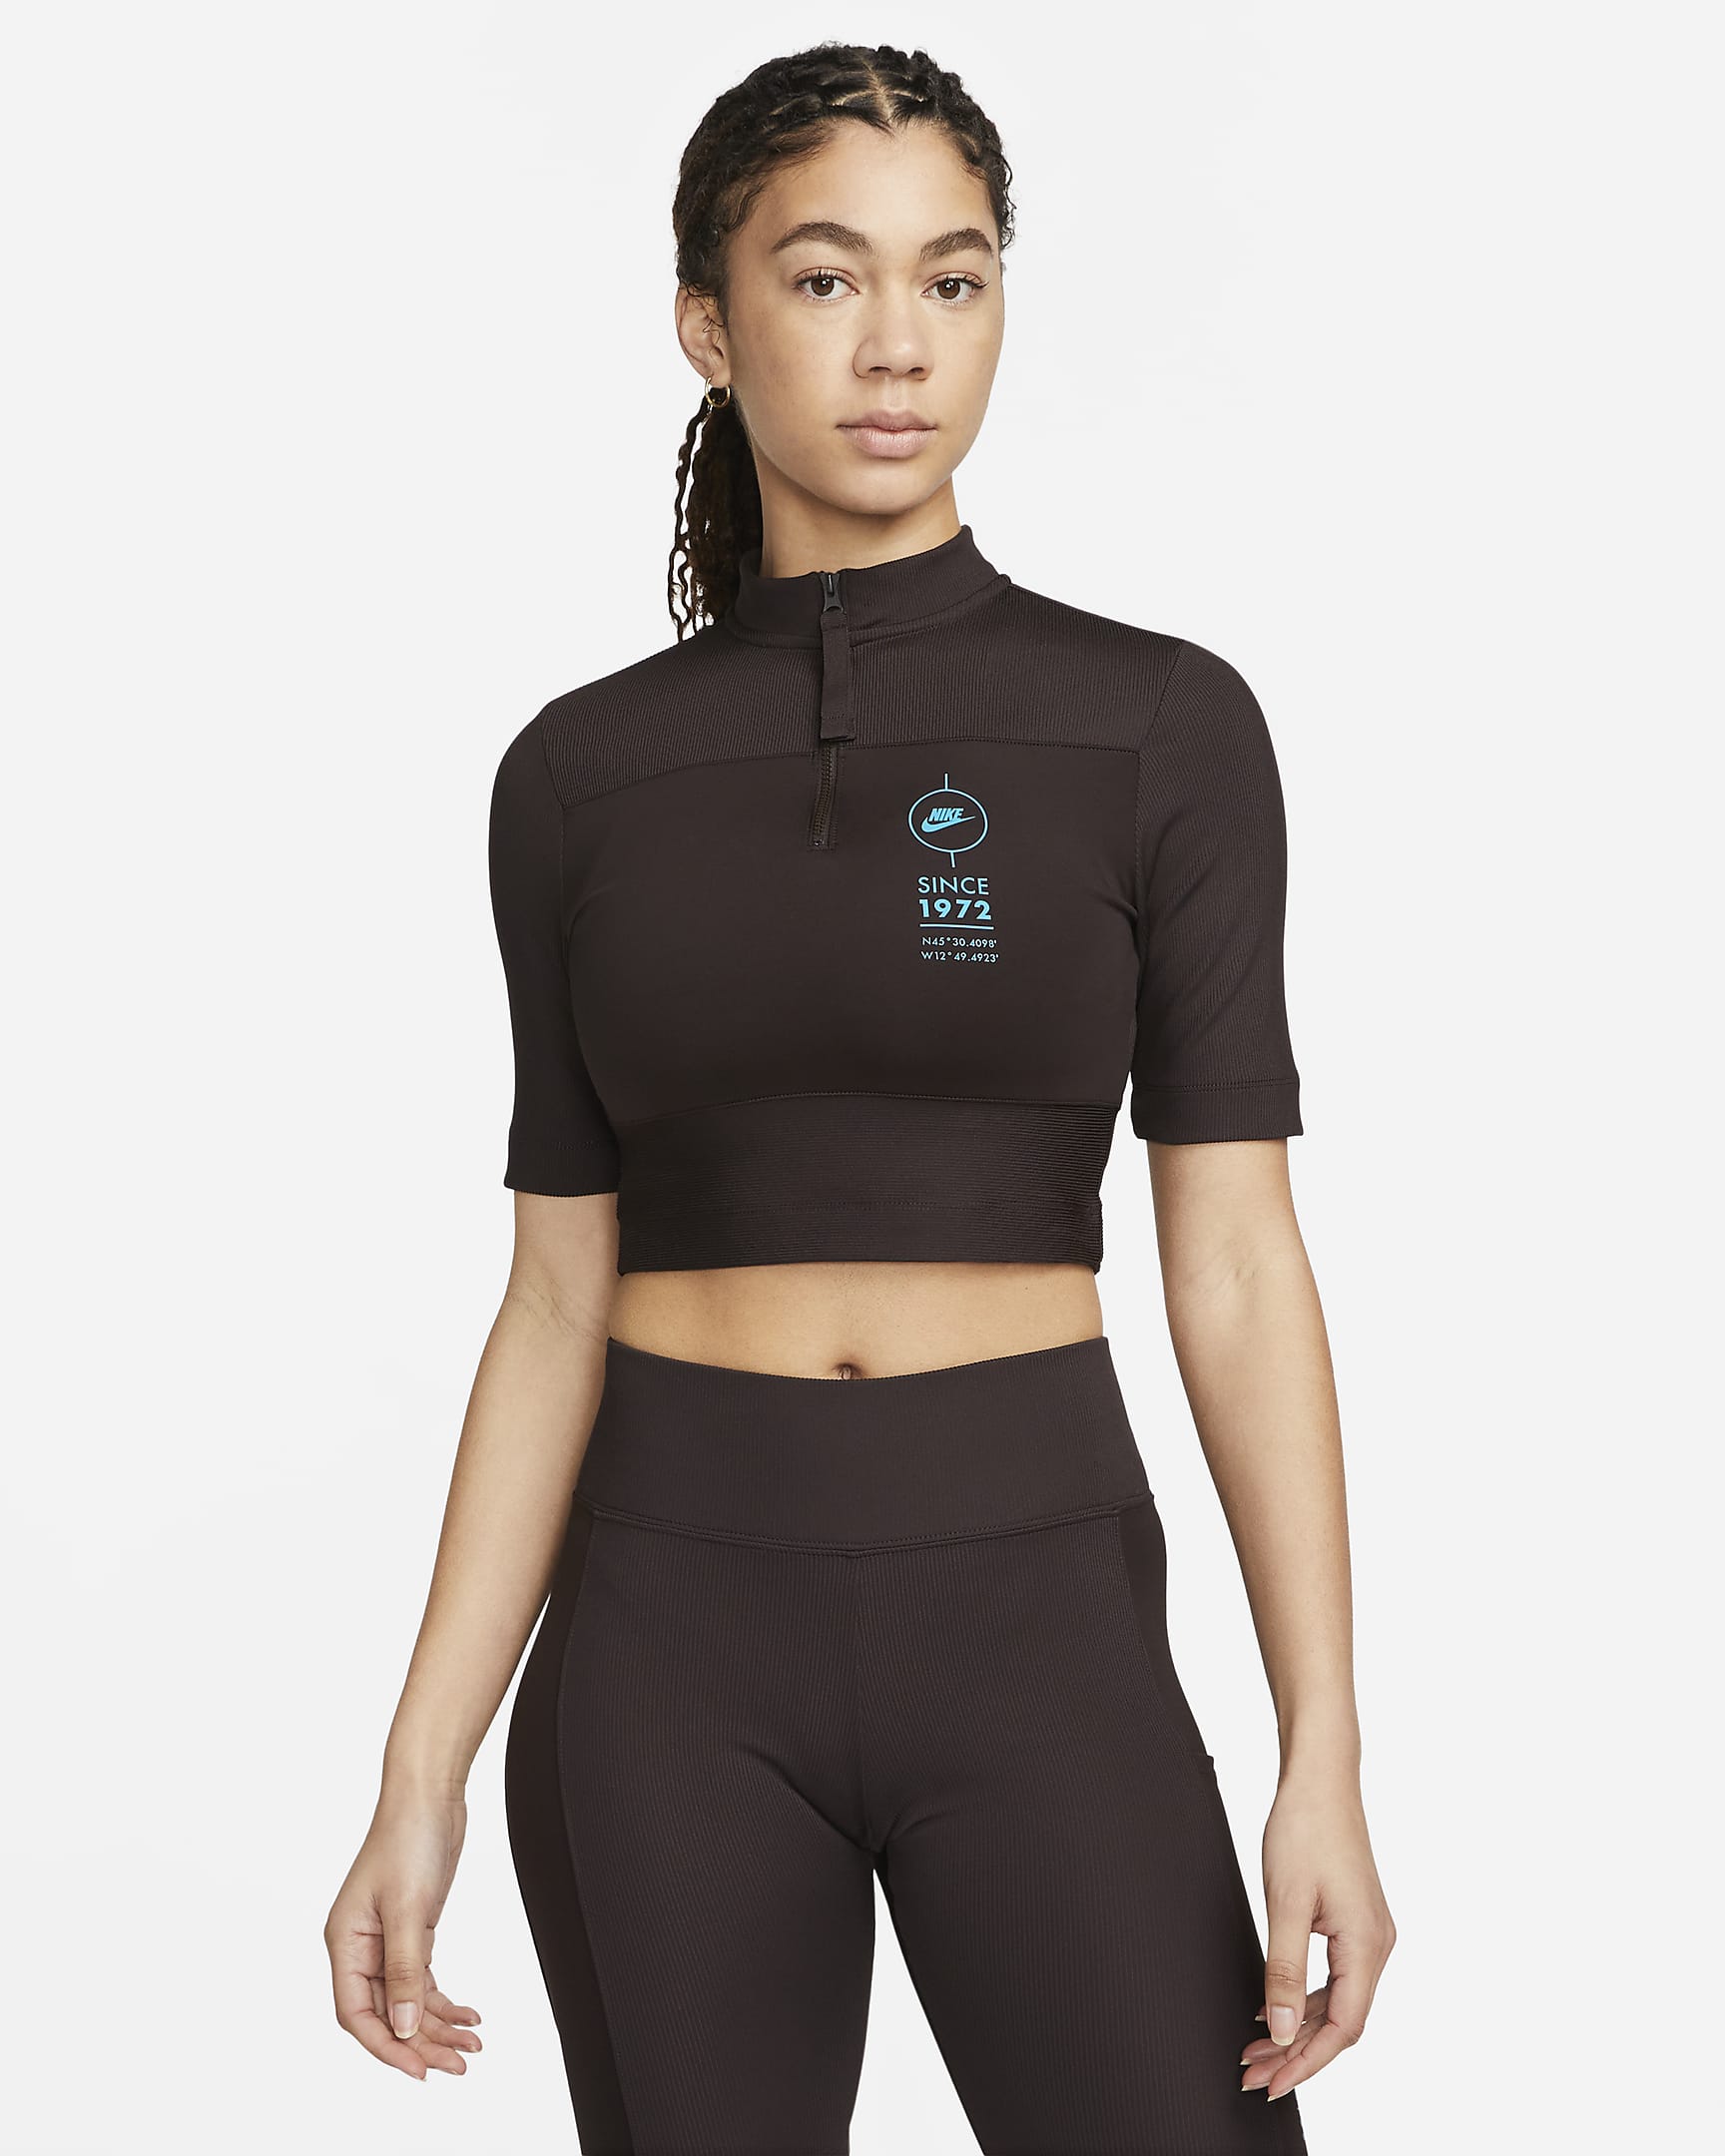 Nike Sportswear Women's Ribbed Short-Sleeve Top. Nike IL